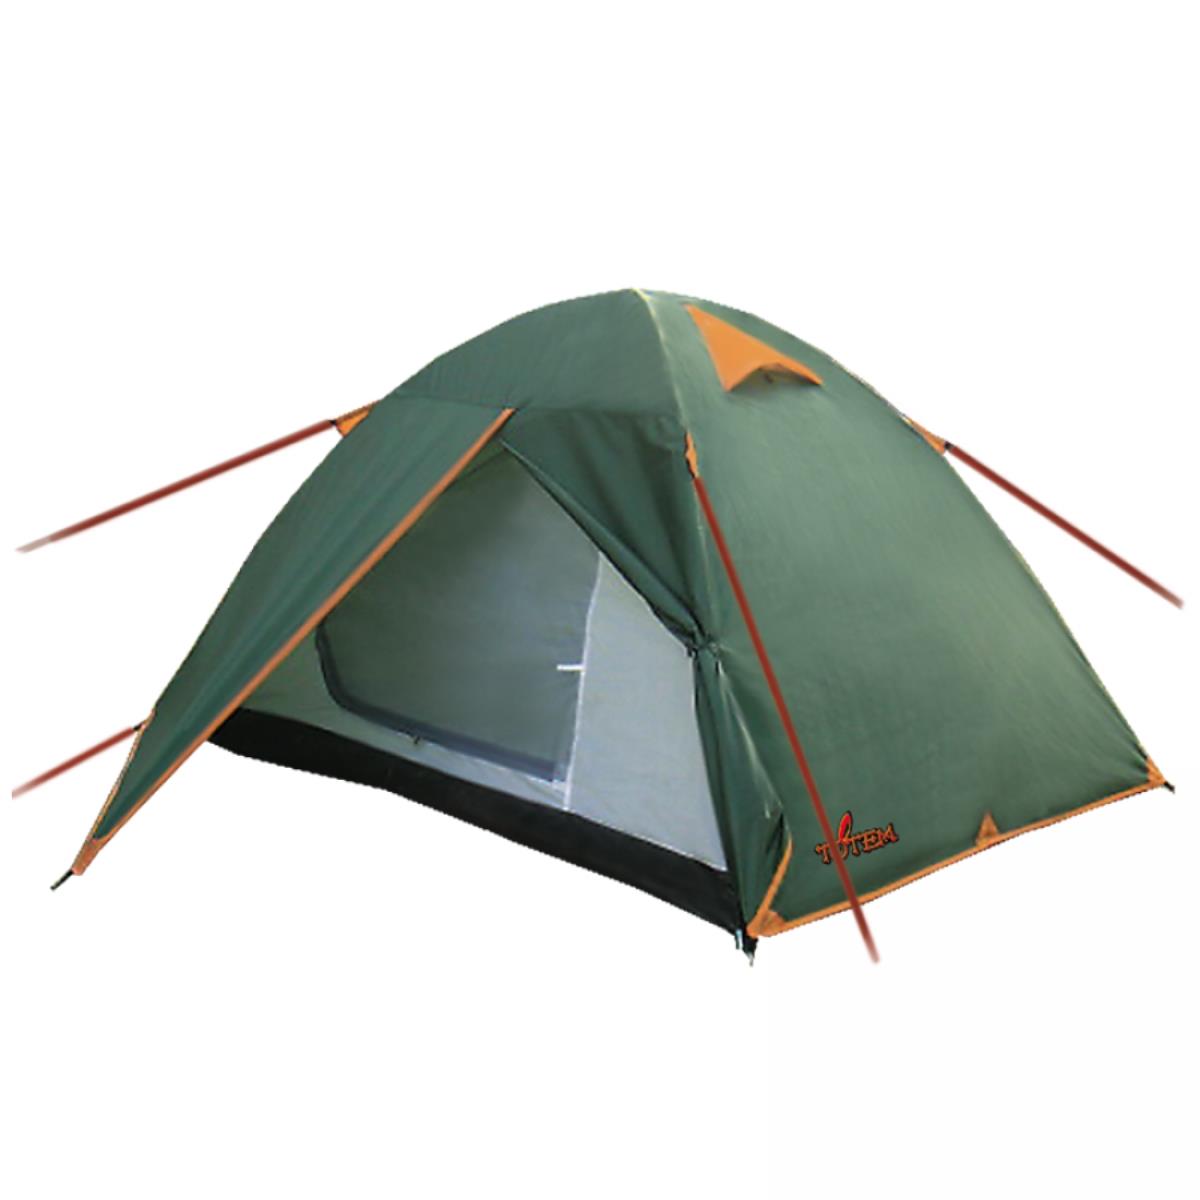 Палатка Tepee 2 V2 зеленый (TTT-020) Totem палатка туристическая dakota 4 р 210 х 240 х 140 см 4 местная двухслойная